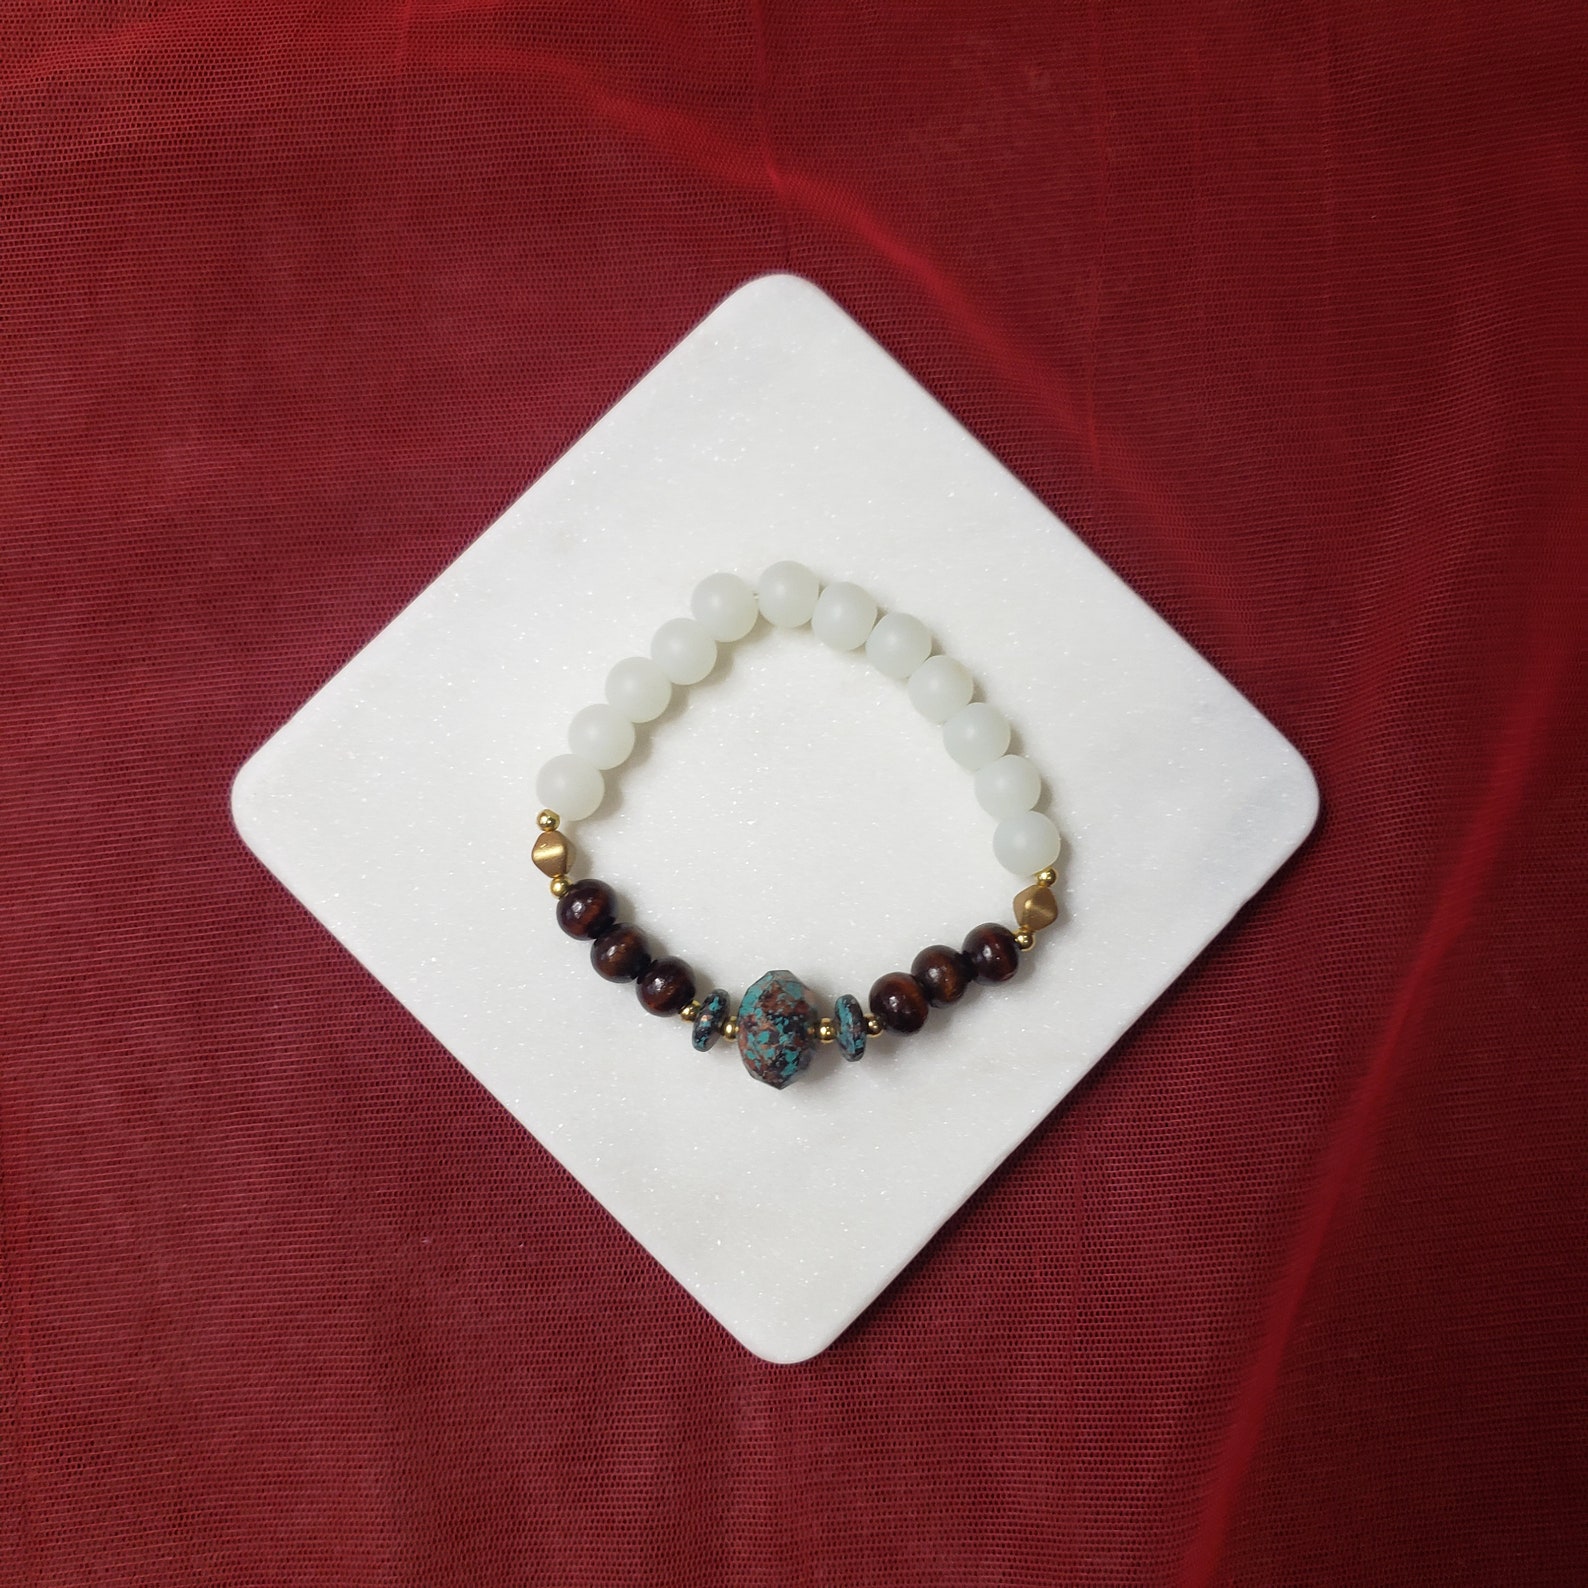 Avatar Beaded Bracelet White Gold Wood | Etsy